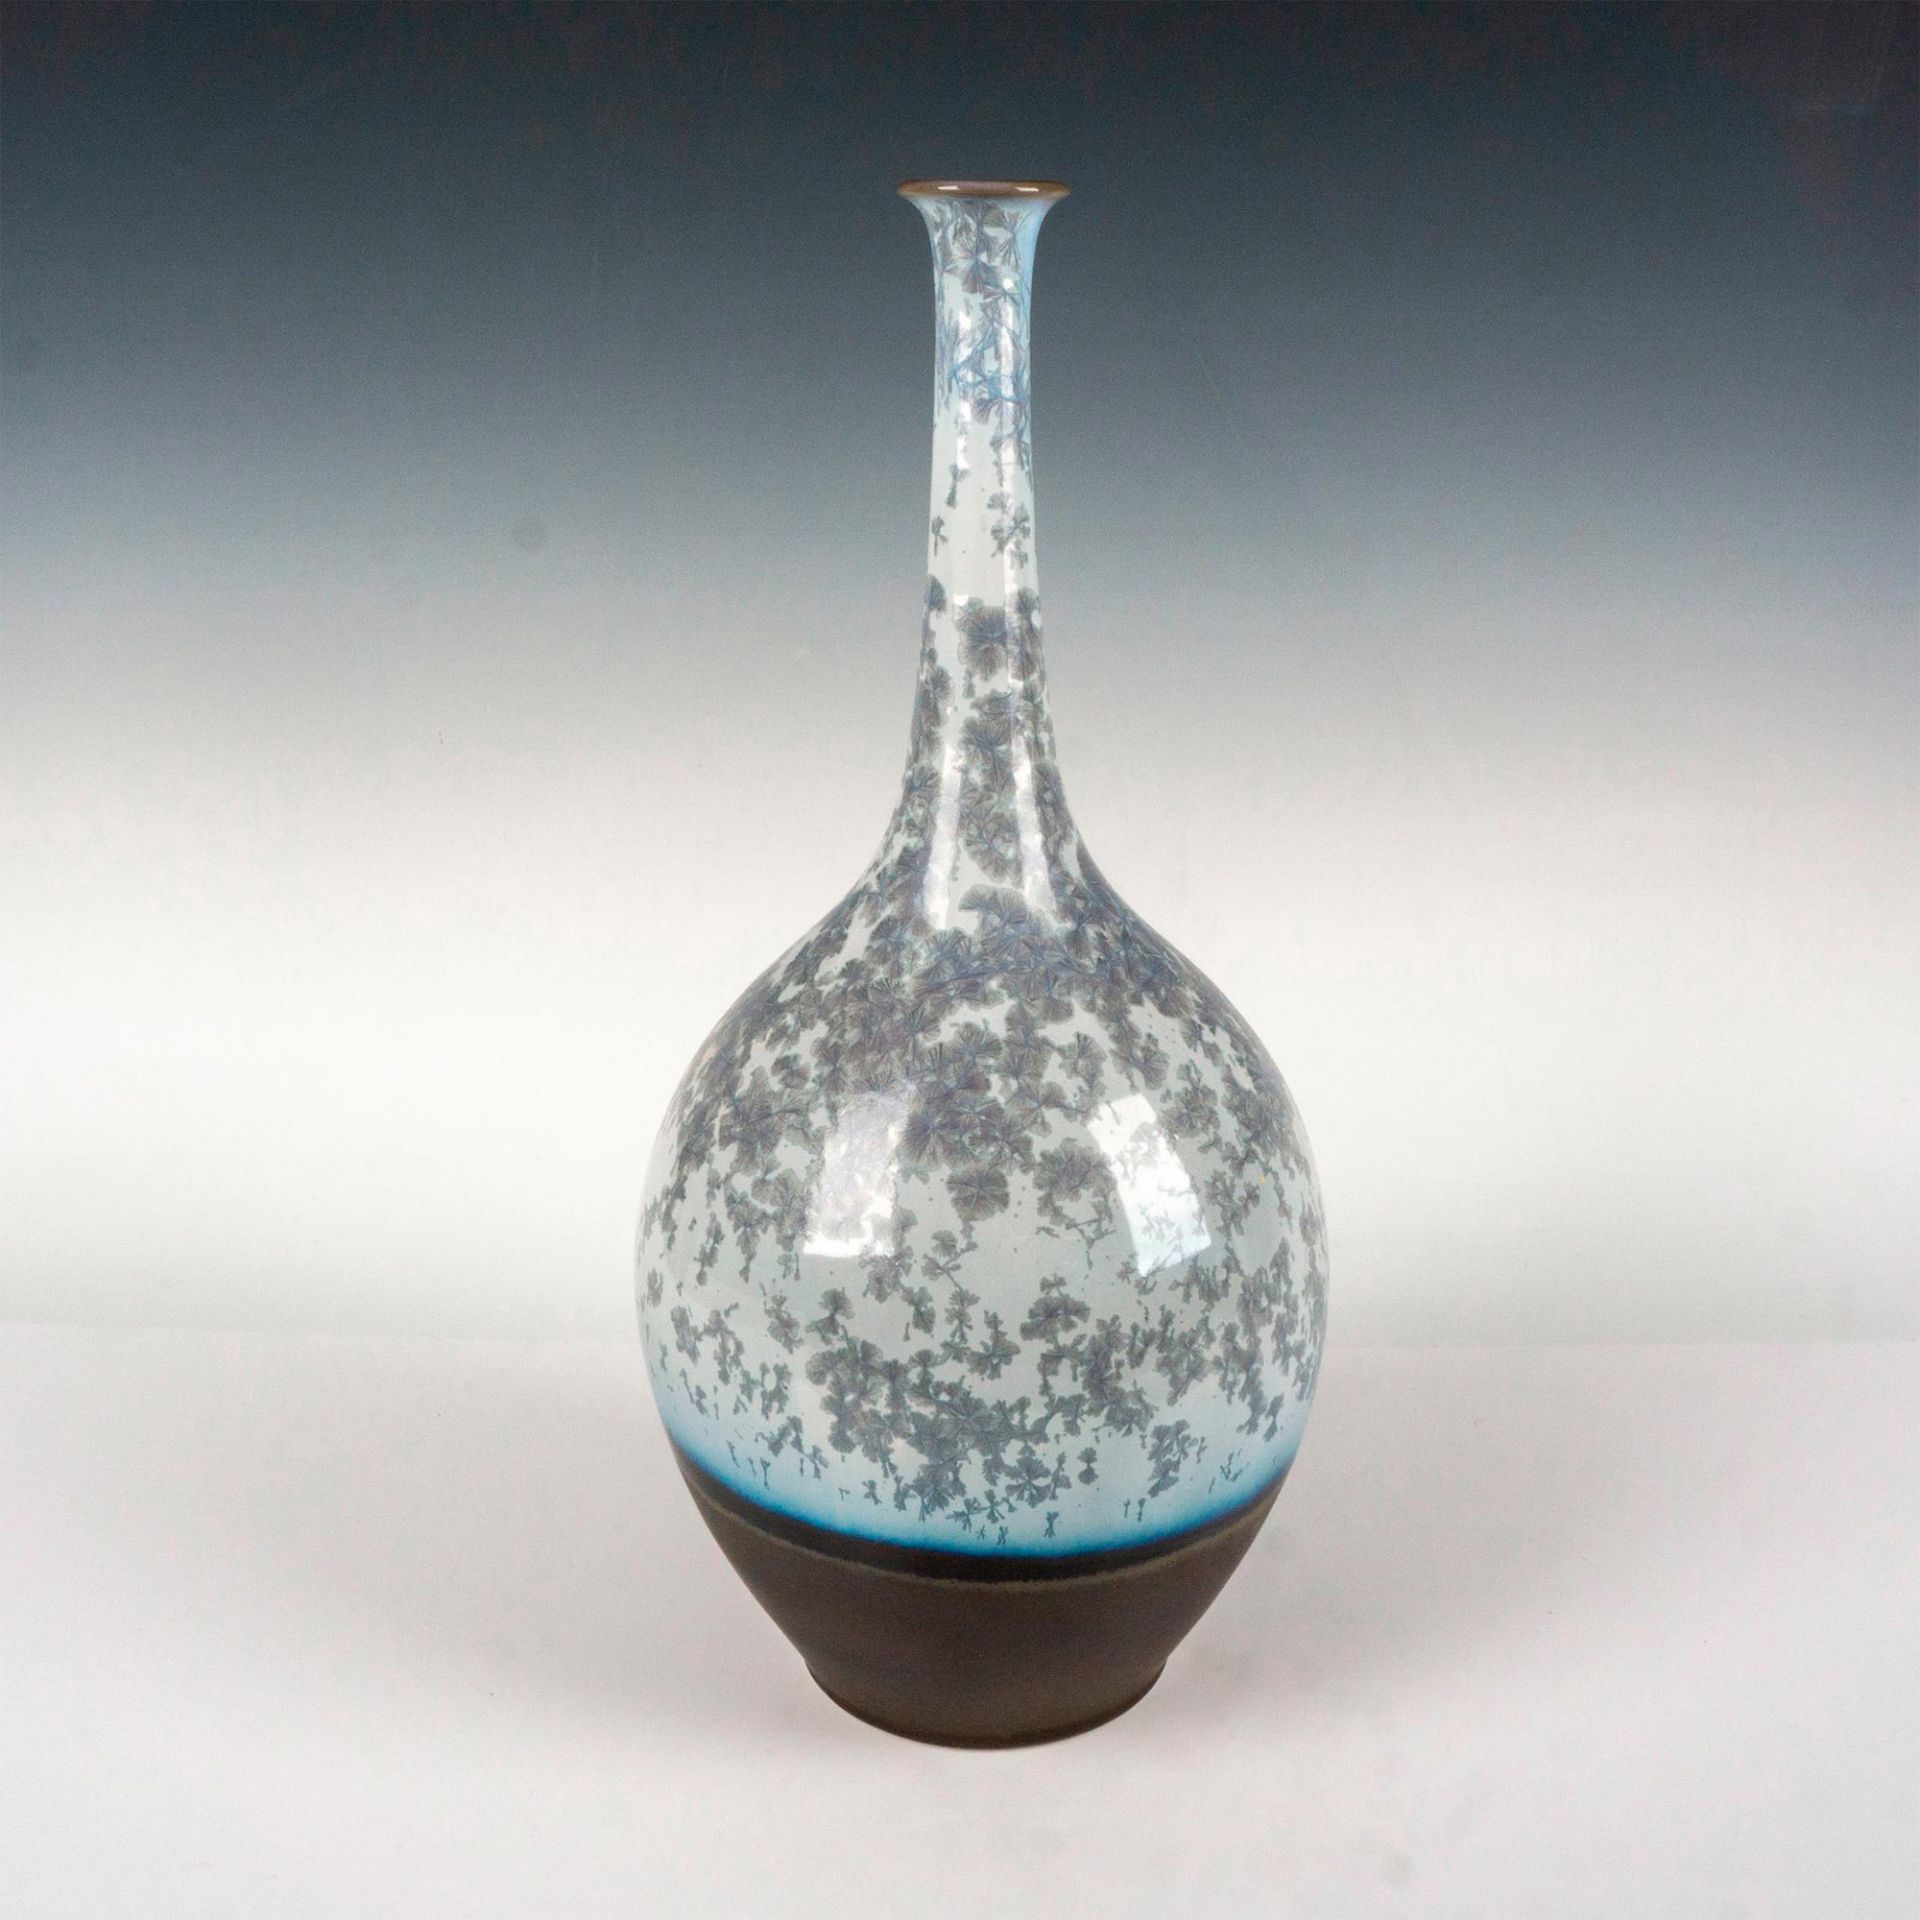 Siler Vase No. 19 1005530.4 - Lladro Porcelain